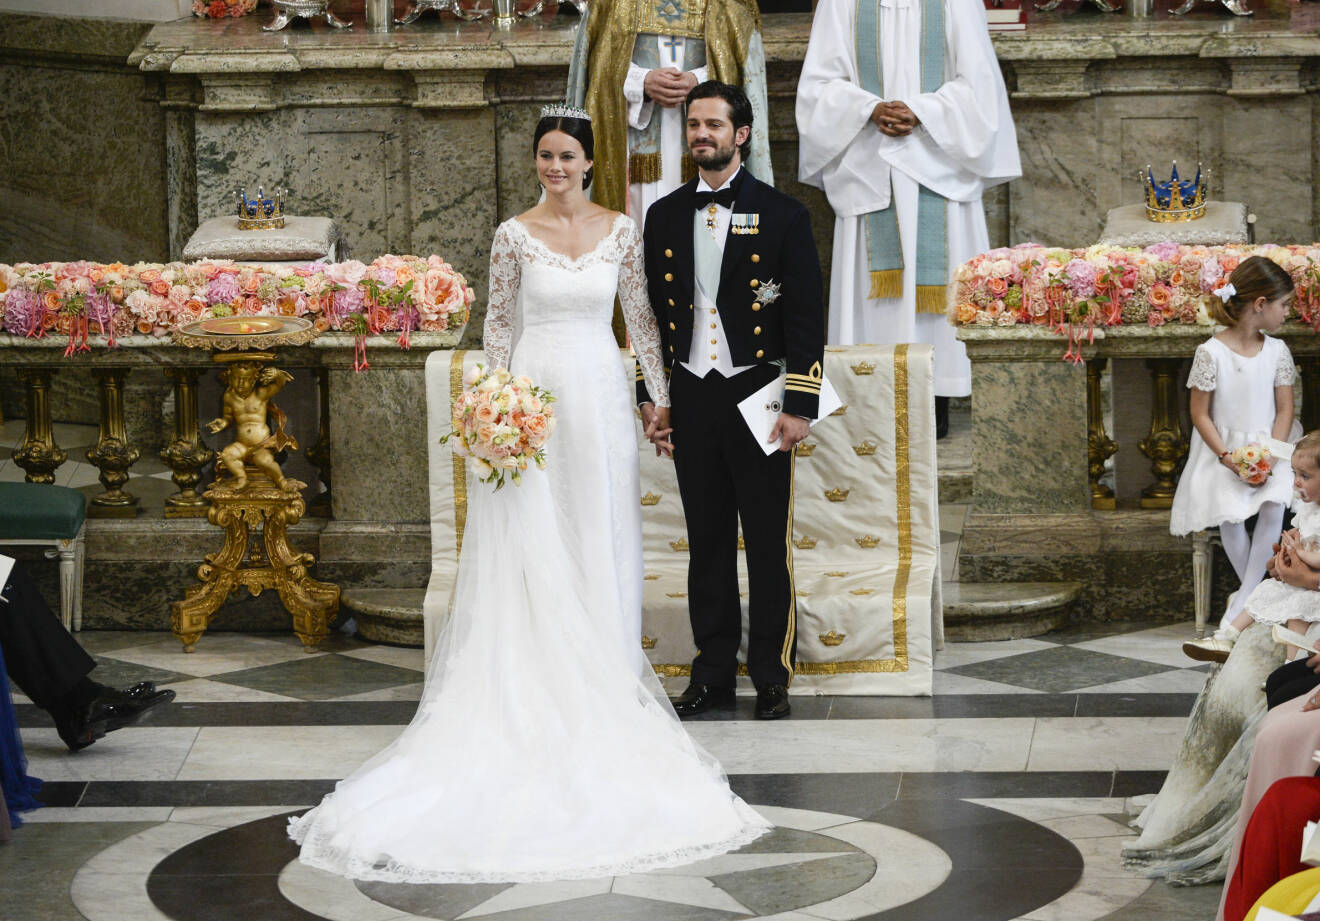 Prinsessan Sofia och prins Carl Philip under sitt bröllop i Slottskyrkan juni 2015.